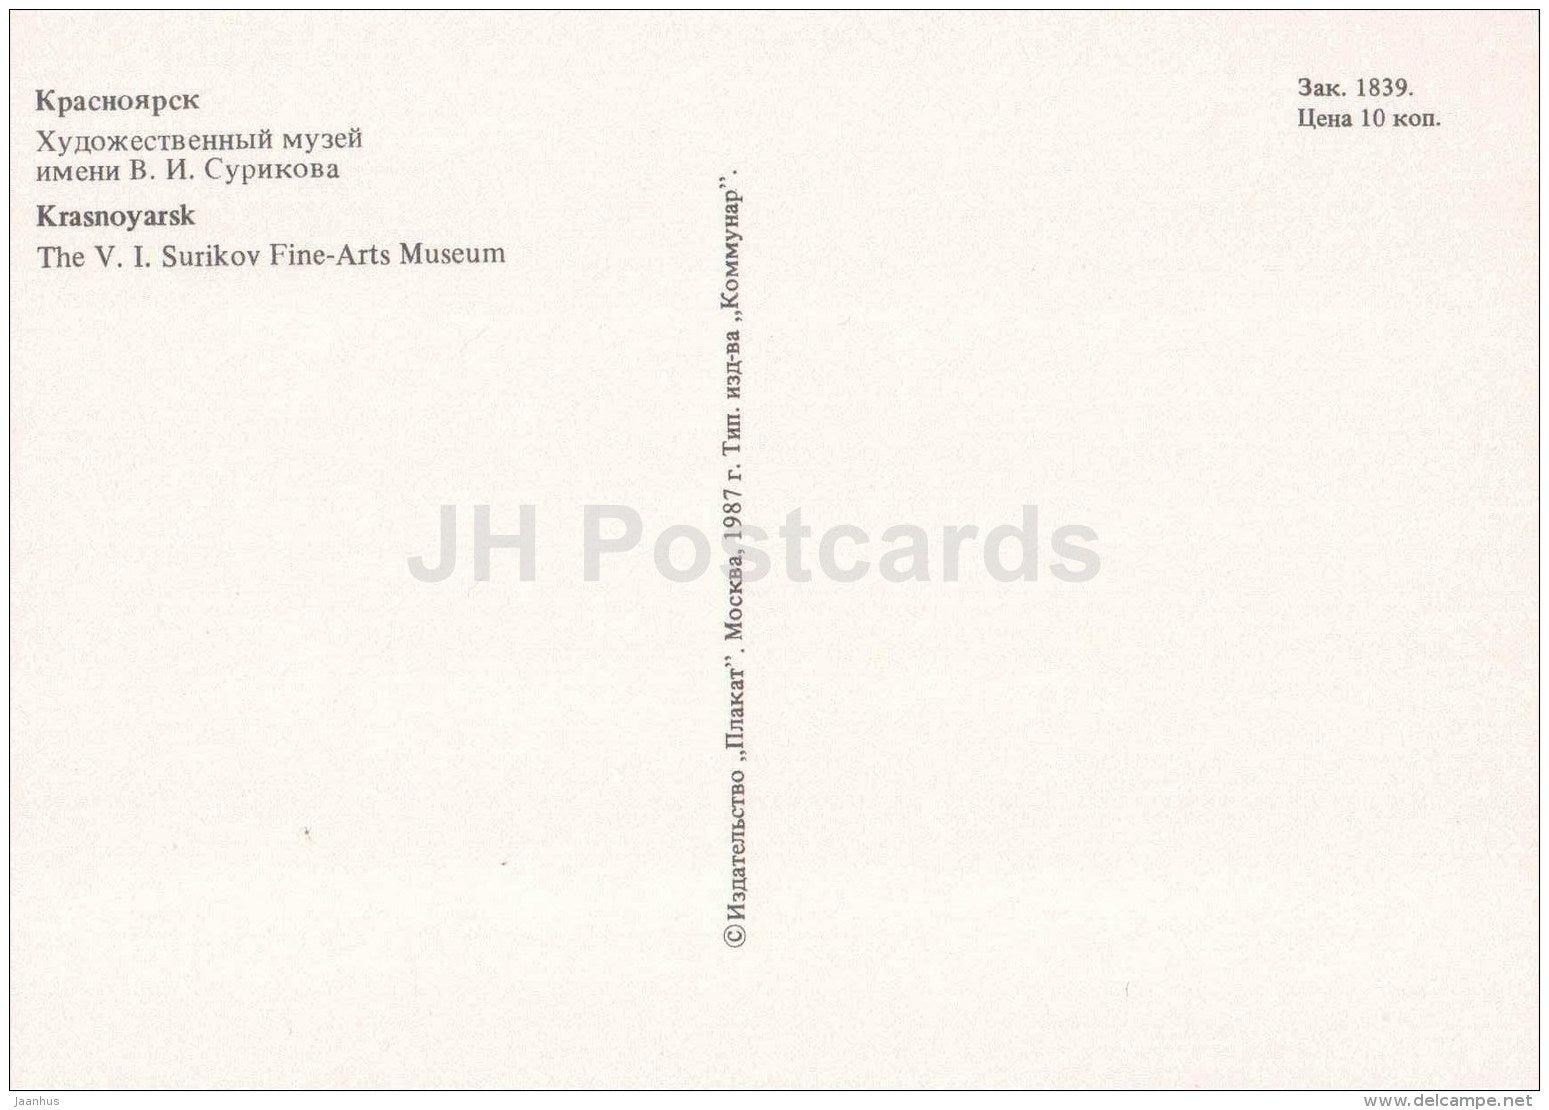 V. Surikov Fine Arts Museum - Krasnoyarsk - 1987 - Russia USSR - unused - JH Postcards